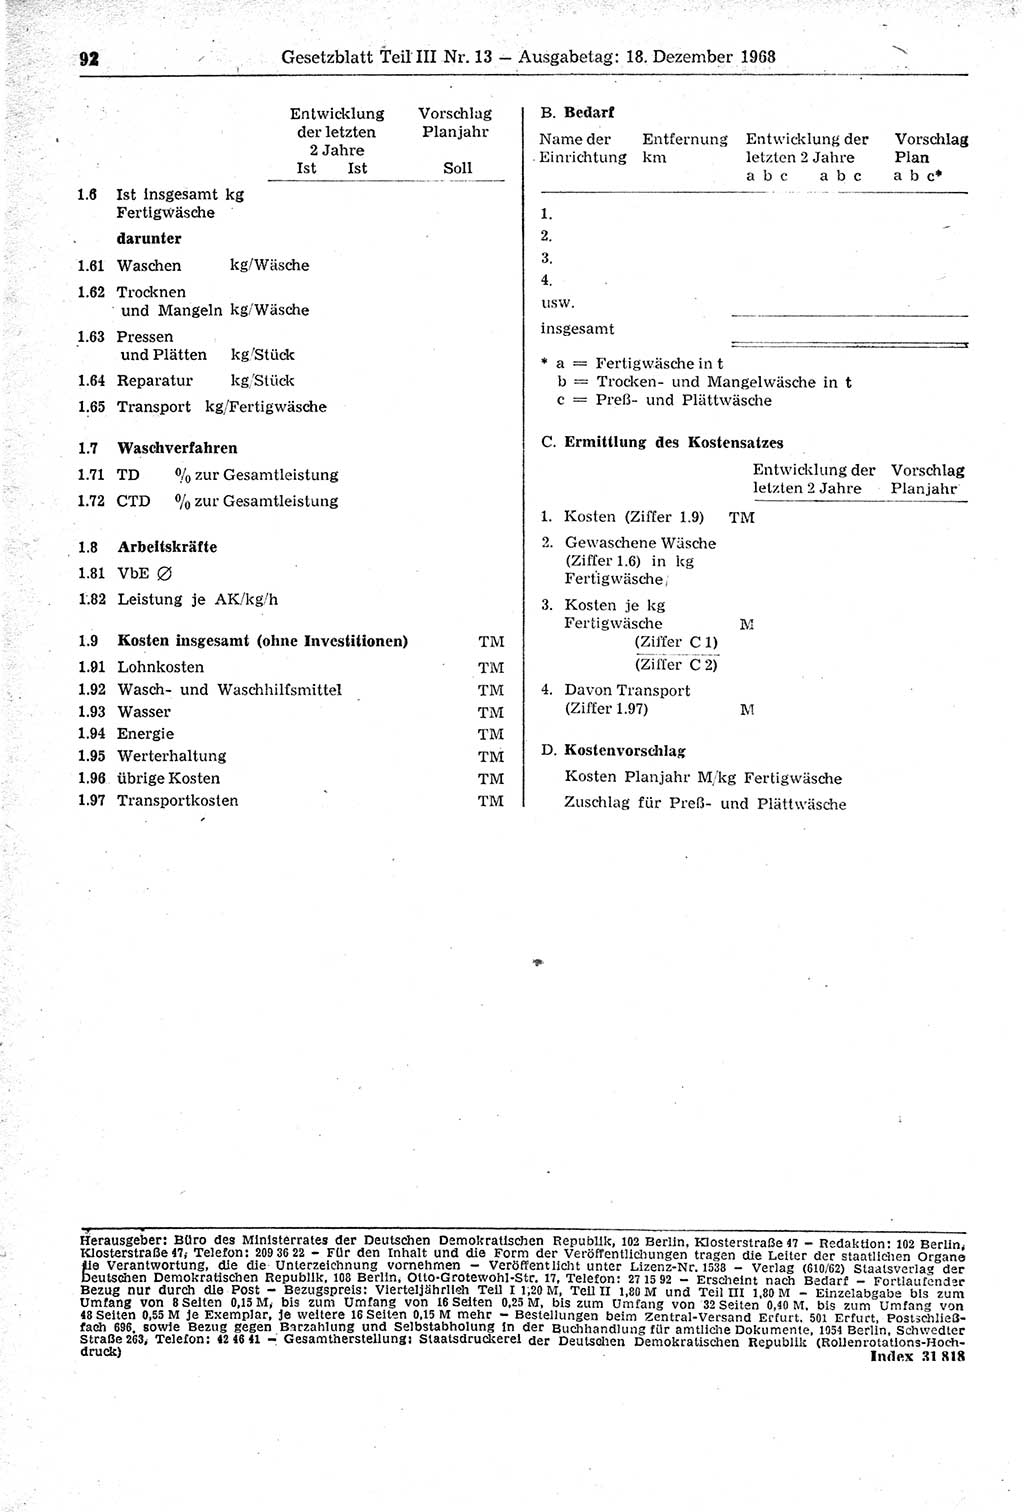 Gesetzblatt (GBl.) der Deutschen Demokratischen Republik (DDR) Teil ⅠⅠⅠ 1968, Seite 92 (GBl. DDR ⅠⅠⅠ 1968, S. 92)